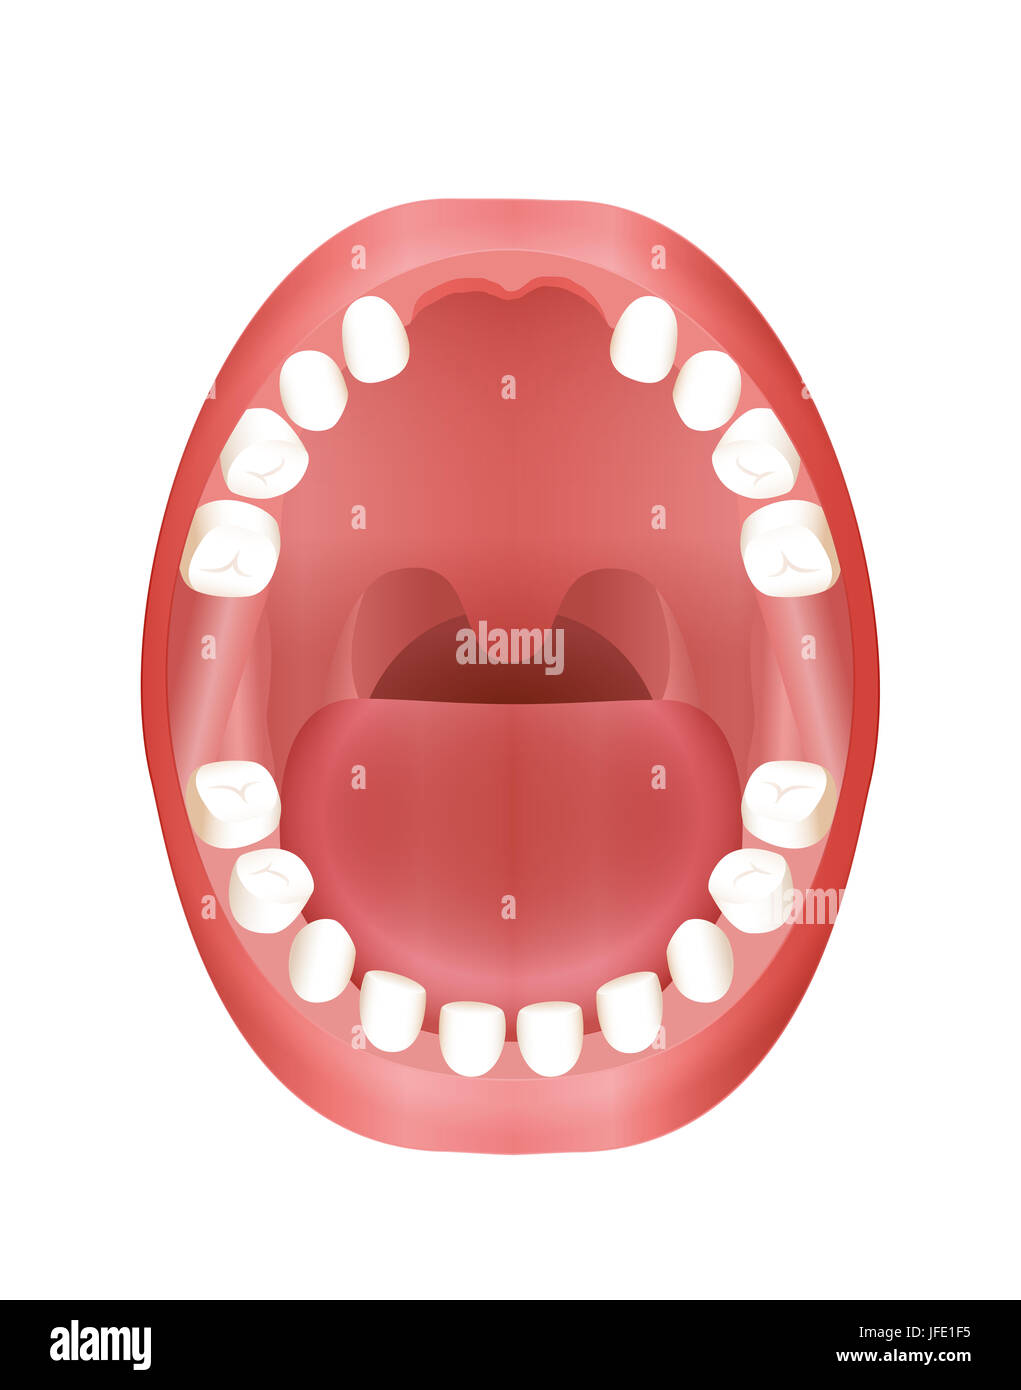 Manque de dents avant - Illustration d'une bouche d'enfant avec la dentition primaire. Banque D'Images